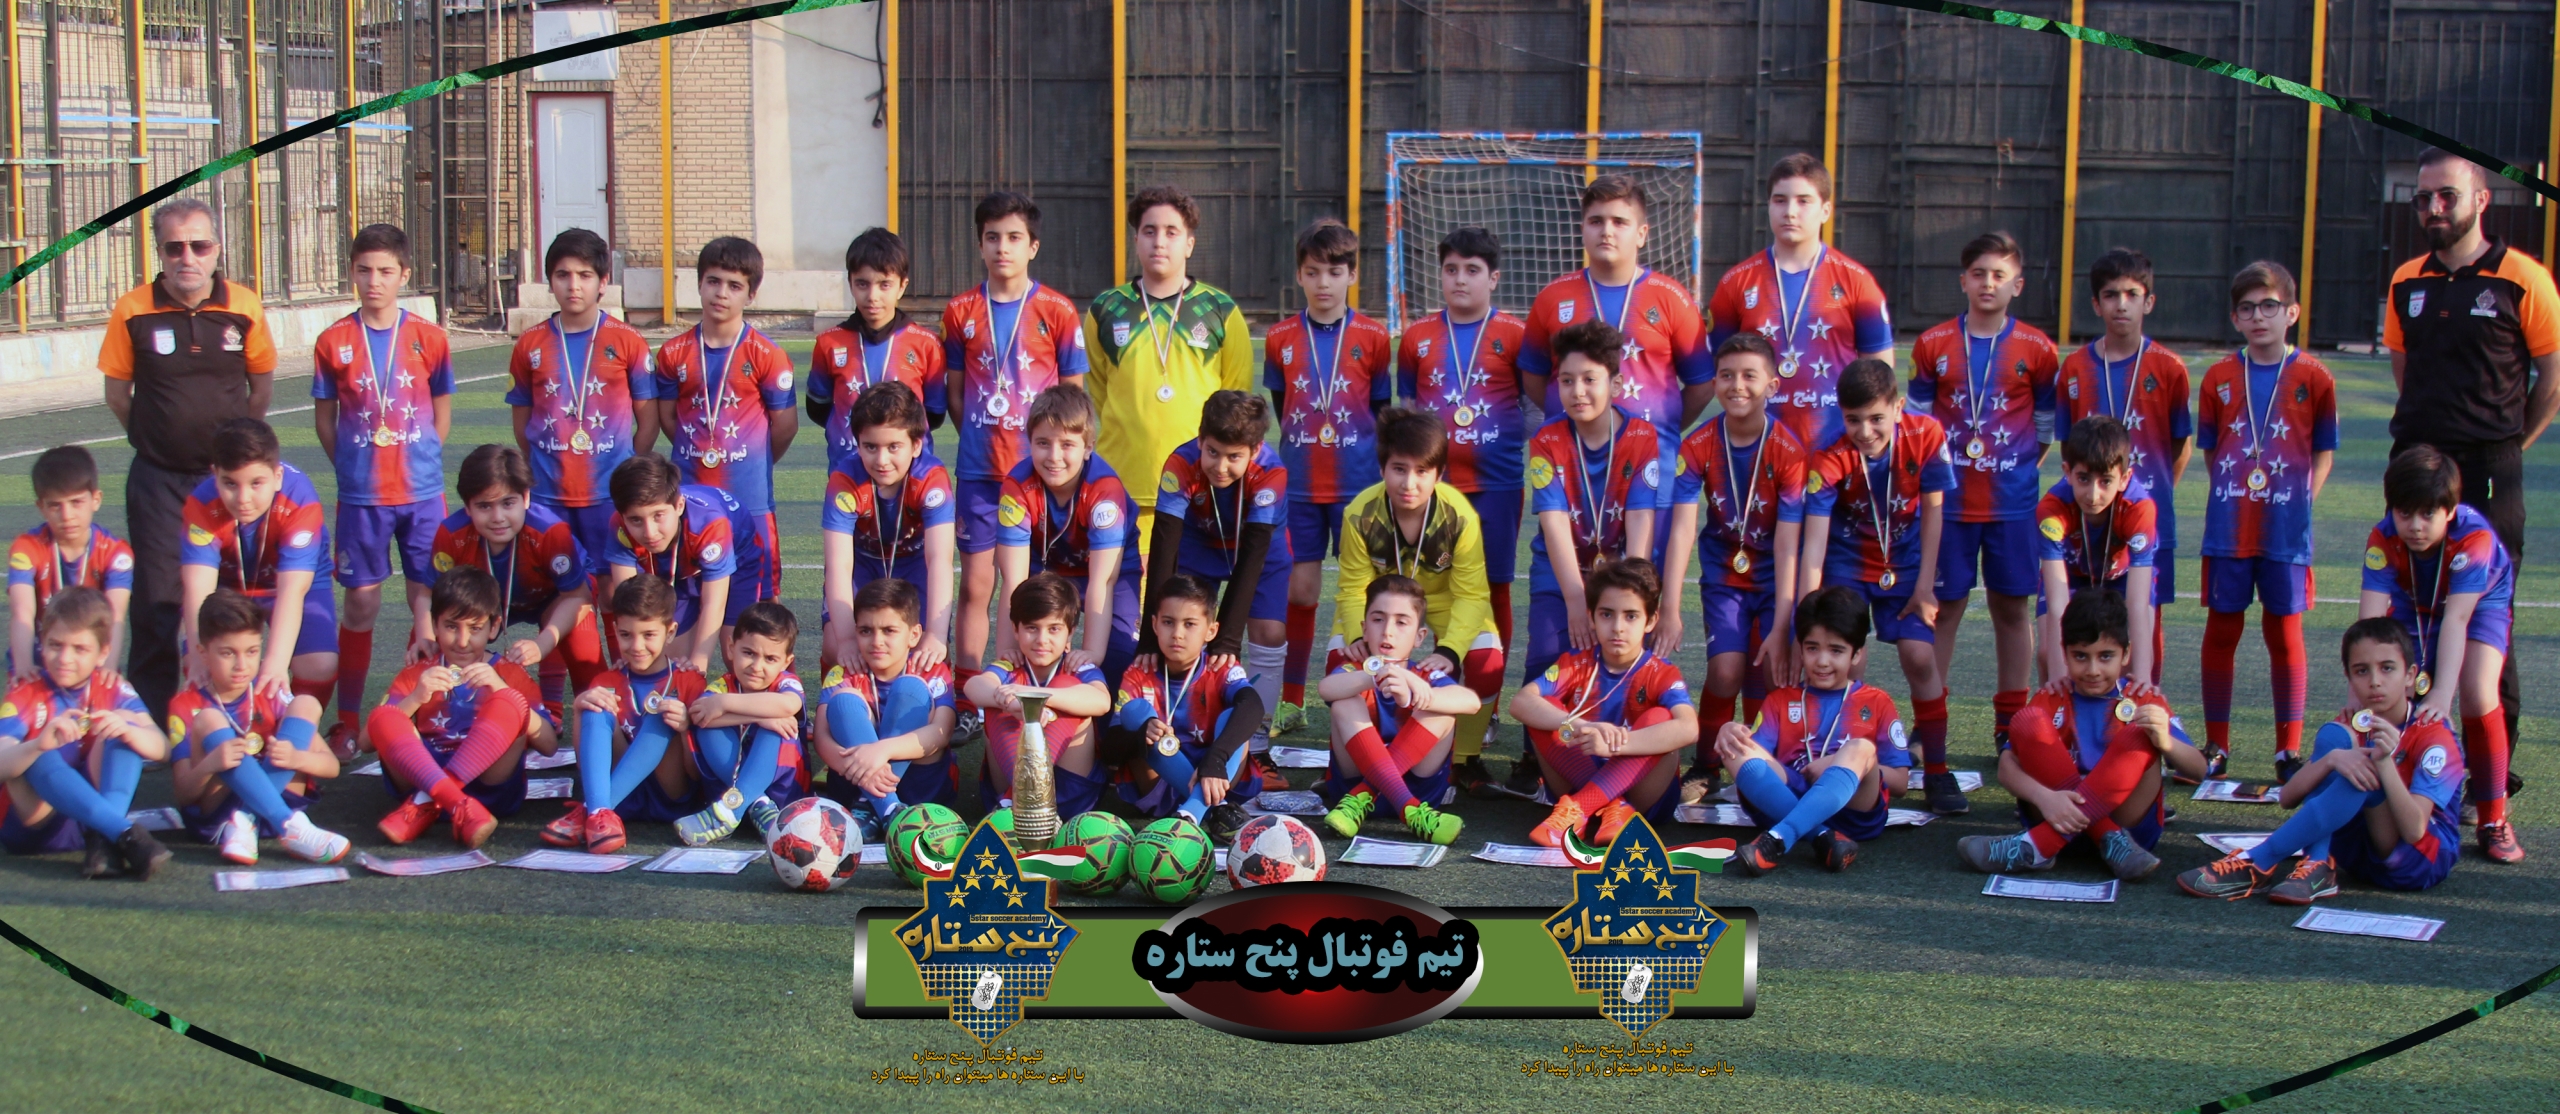 بهترین مدرسه فوتبال در شمال شرق تهران